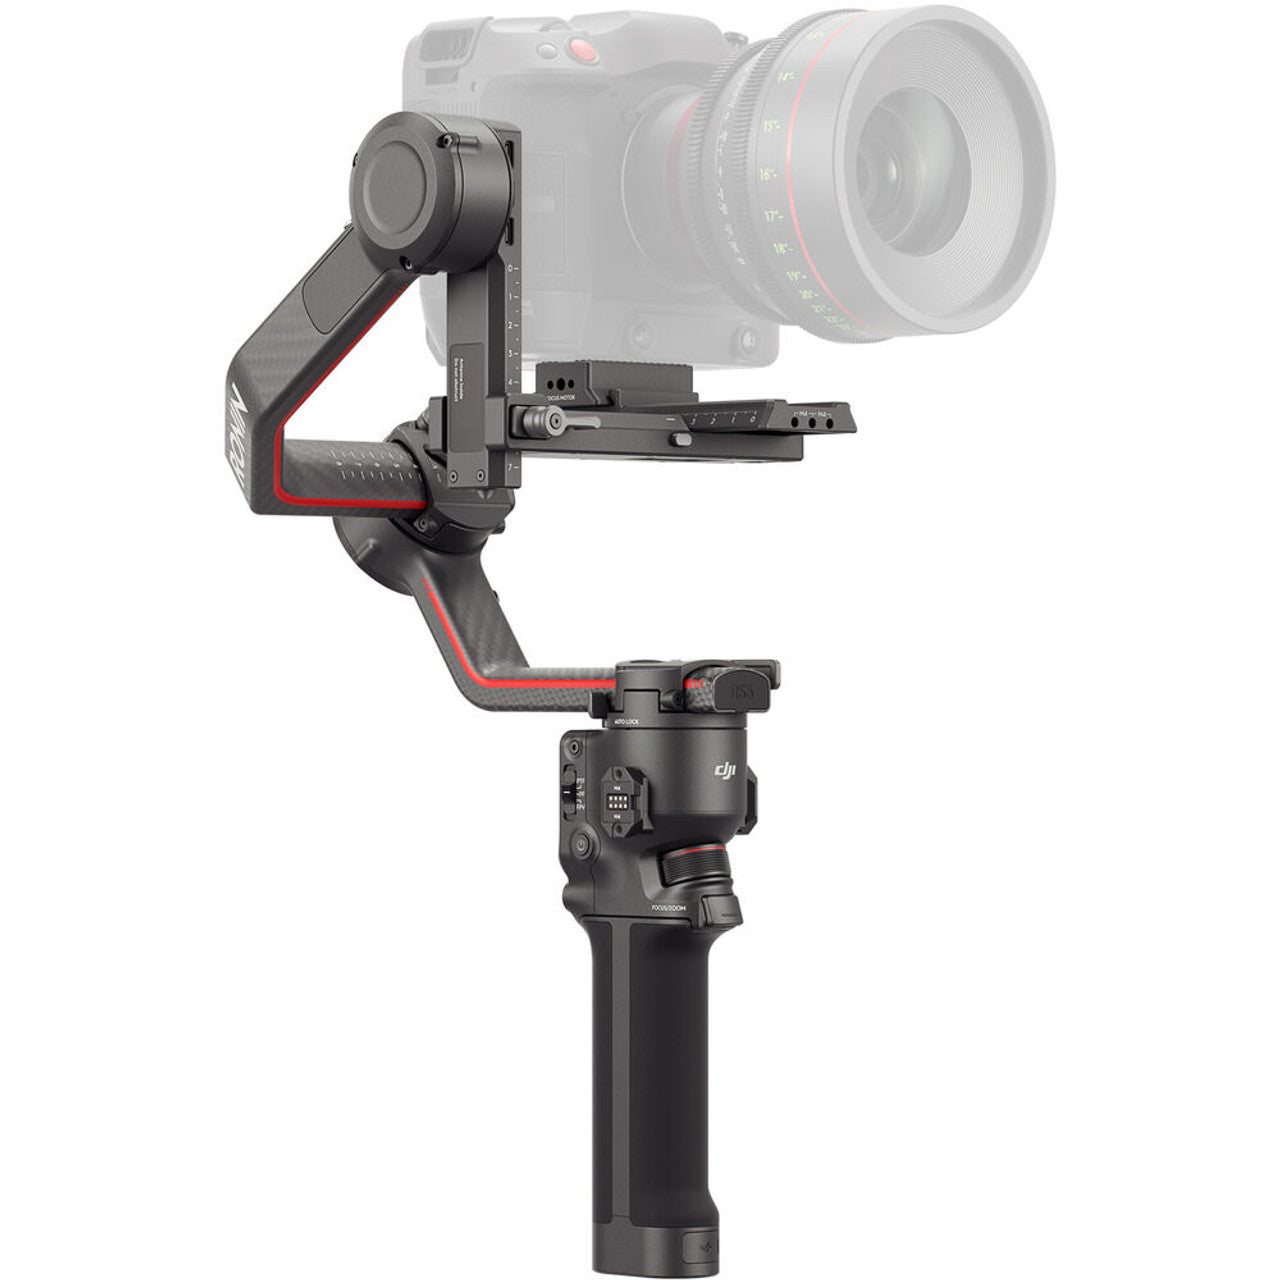 DJI RS3 Pro 專業相機手持三軸穩定器